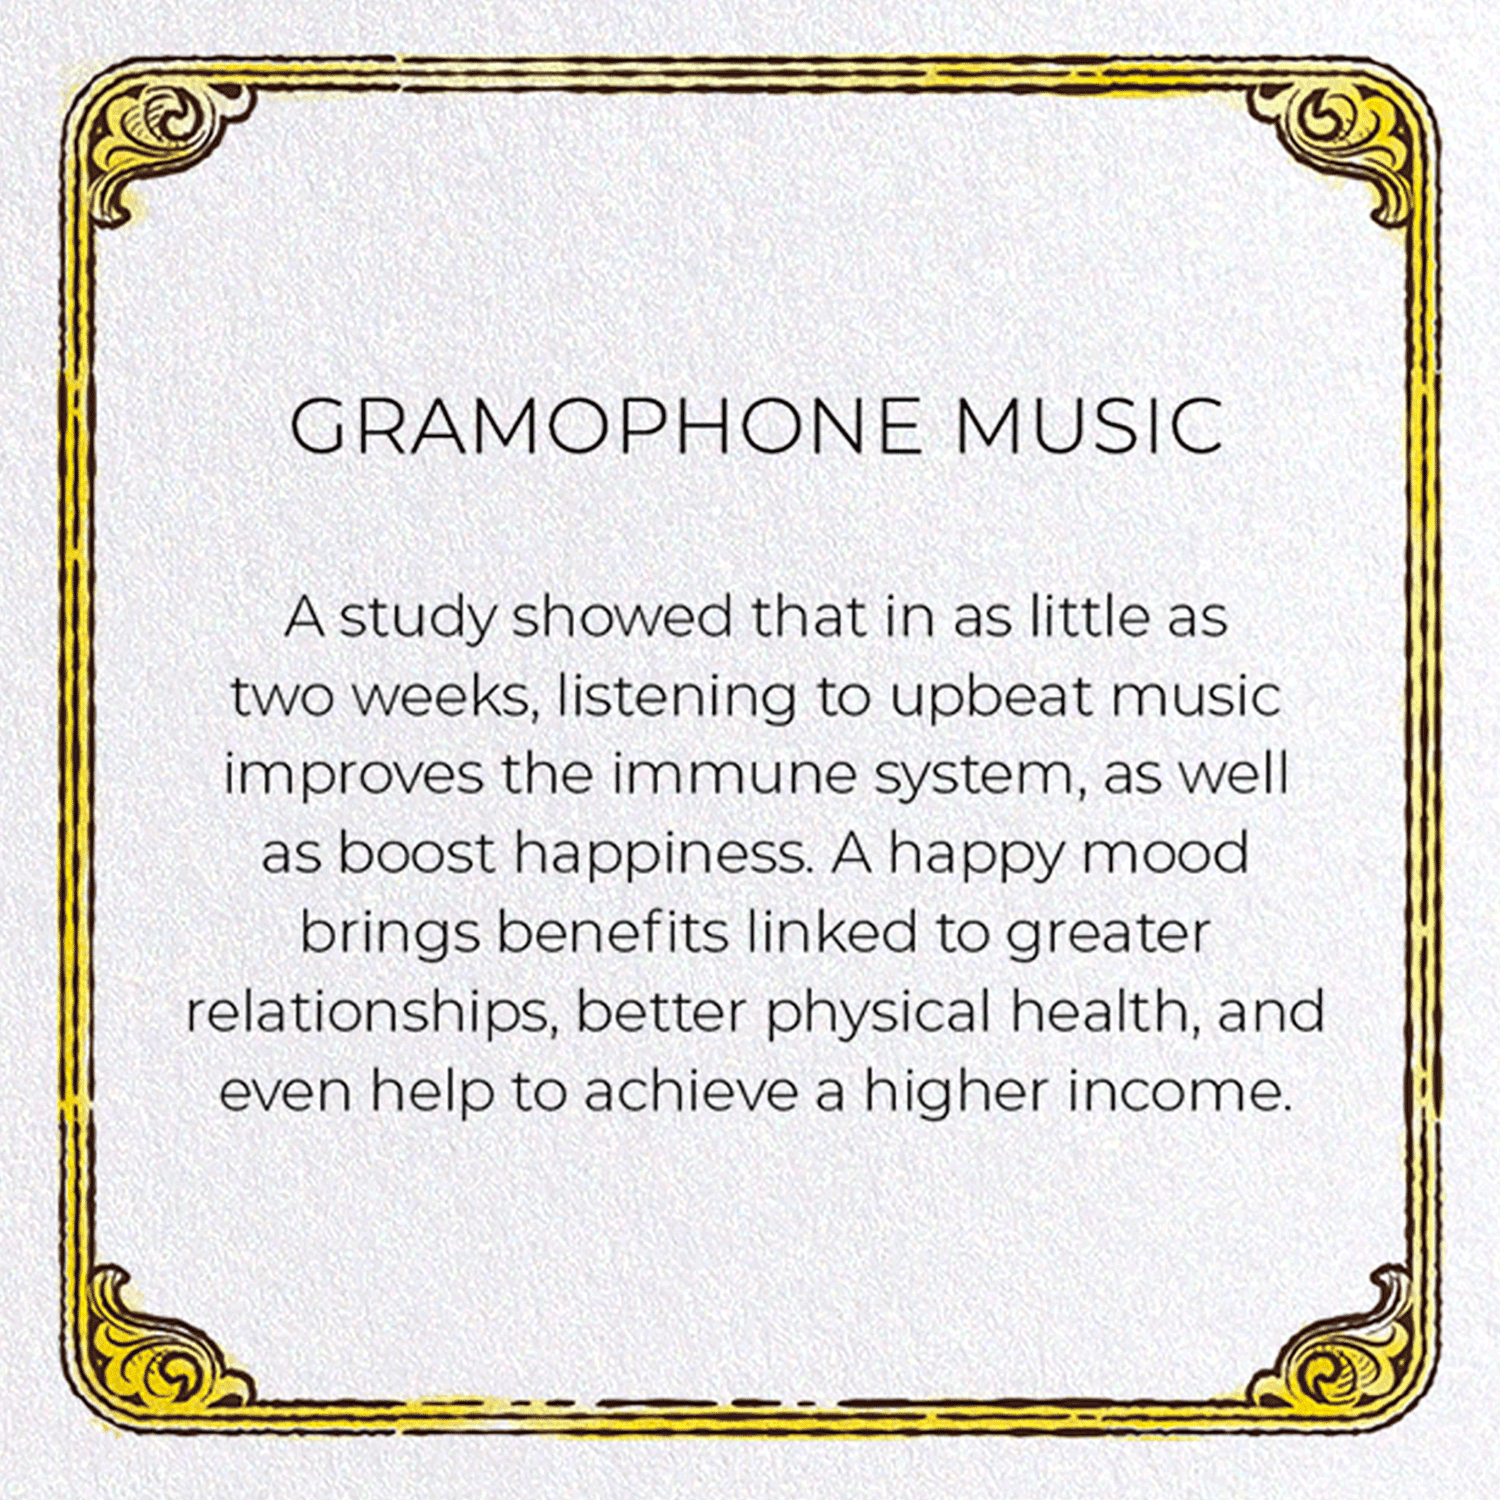 GRAMOPHONE MUSIC